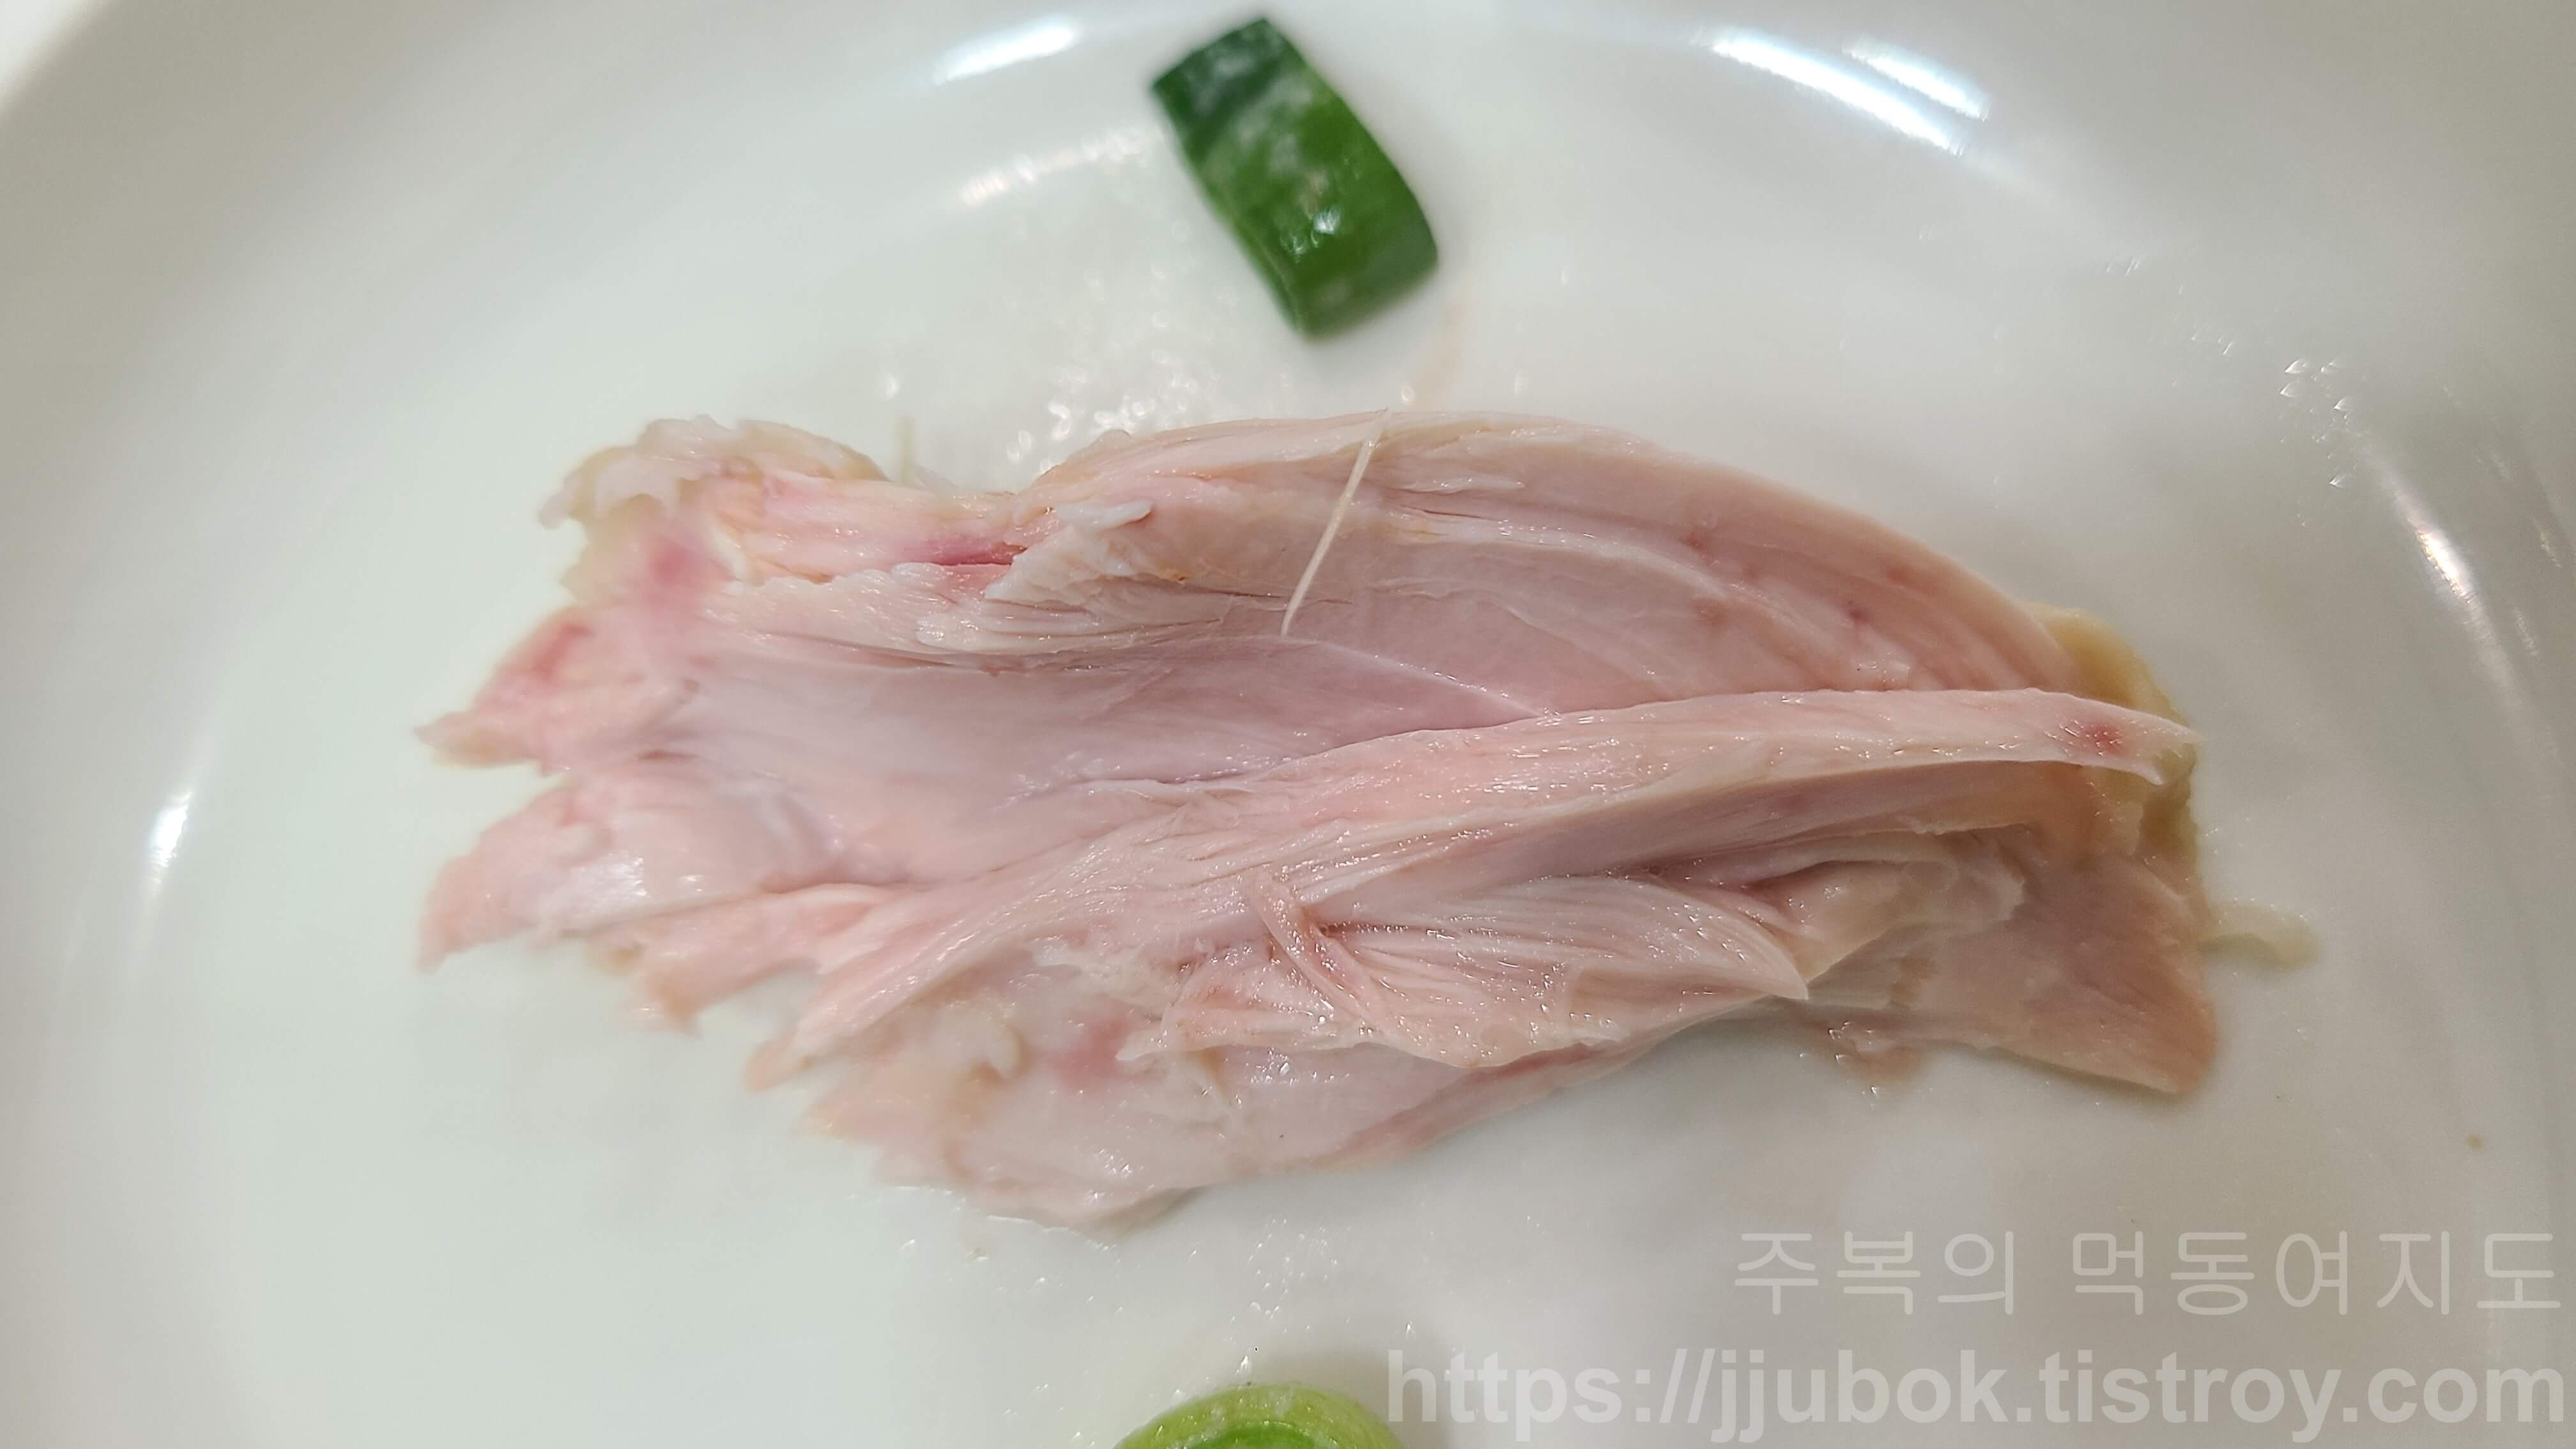 작전동-서울녹각삼계탕-녹두삼계탕-닭고기